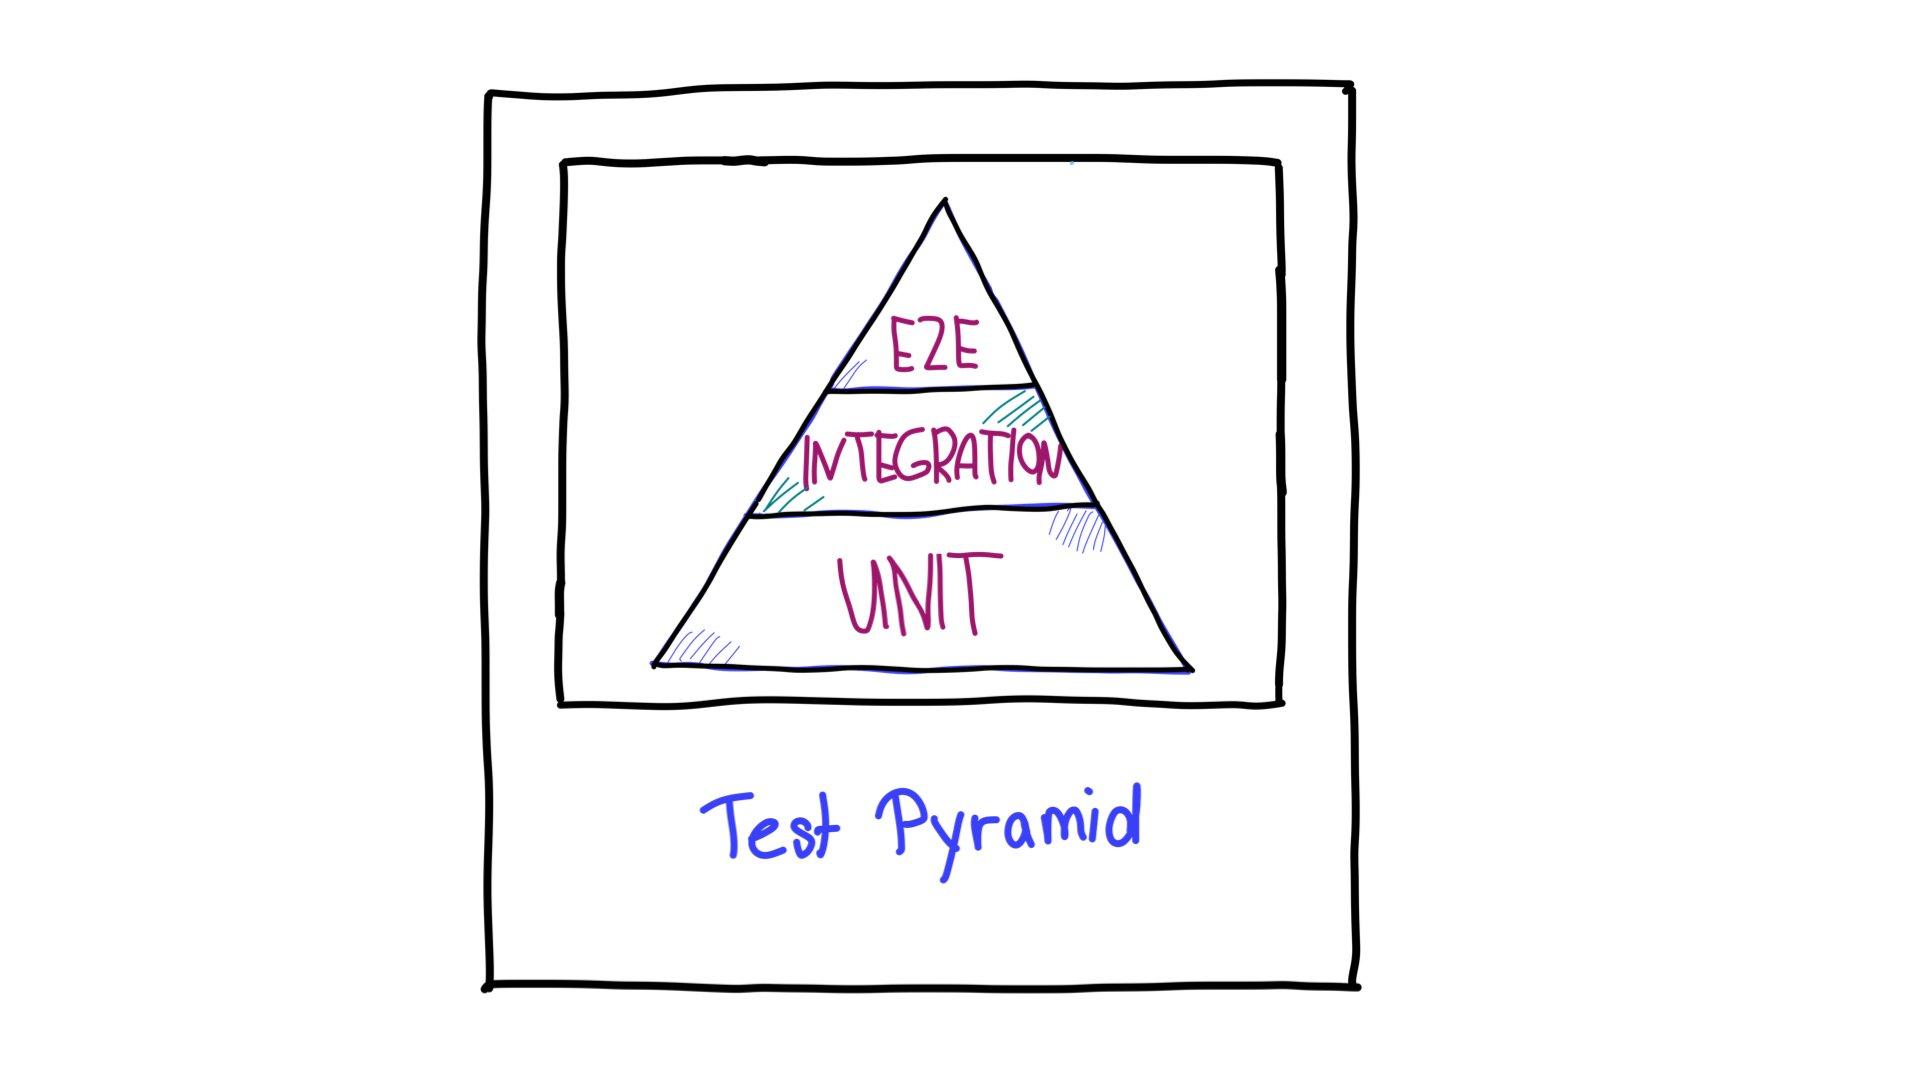 Die Testpyramide mit End-to-End-Tests (E2E) oben, Integrationstests in der Mitte und Einheitentests unten.